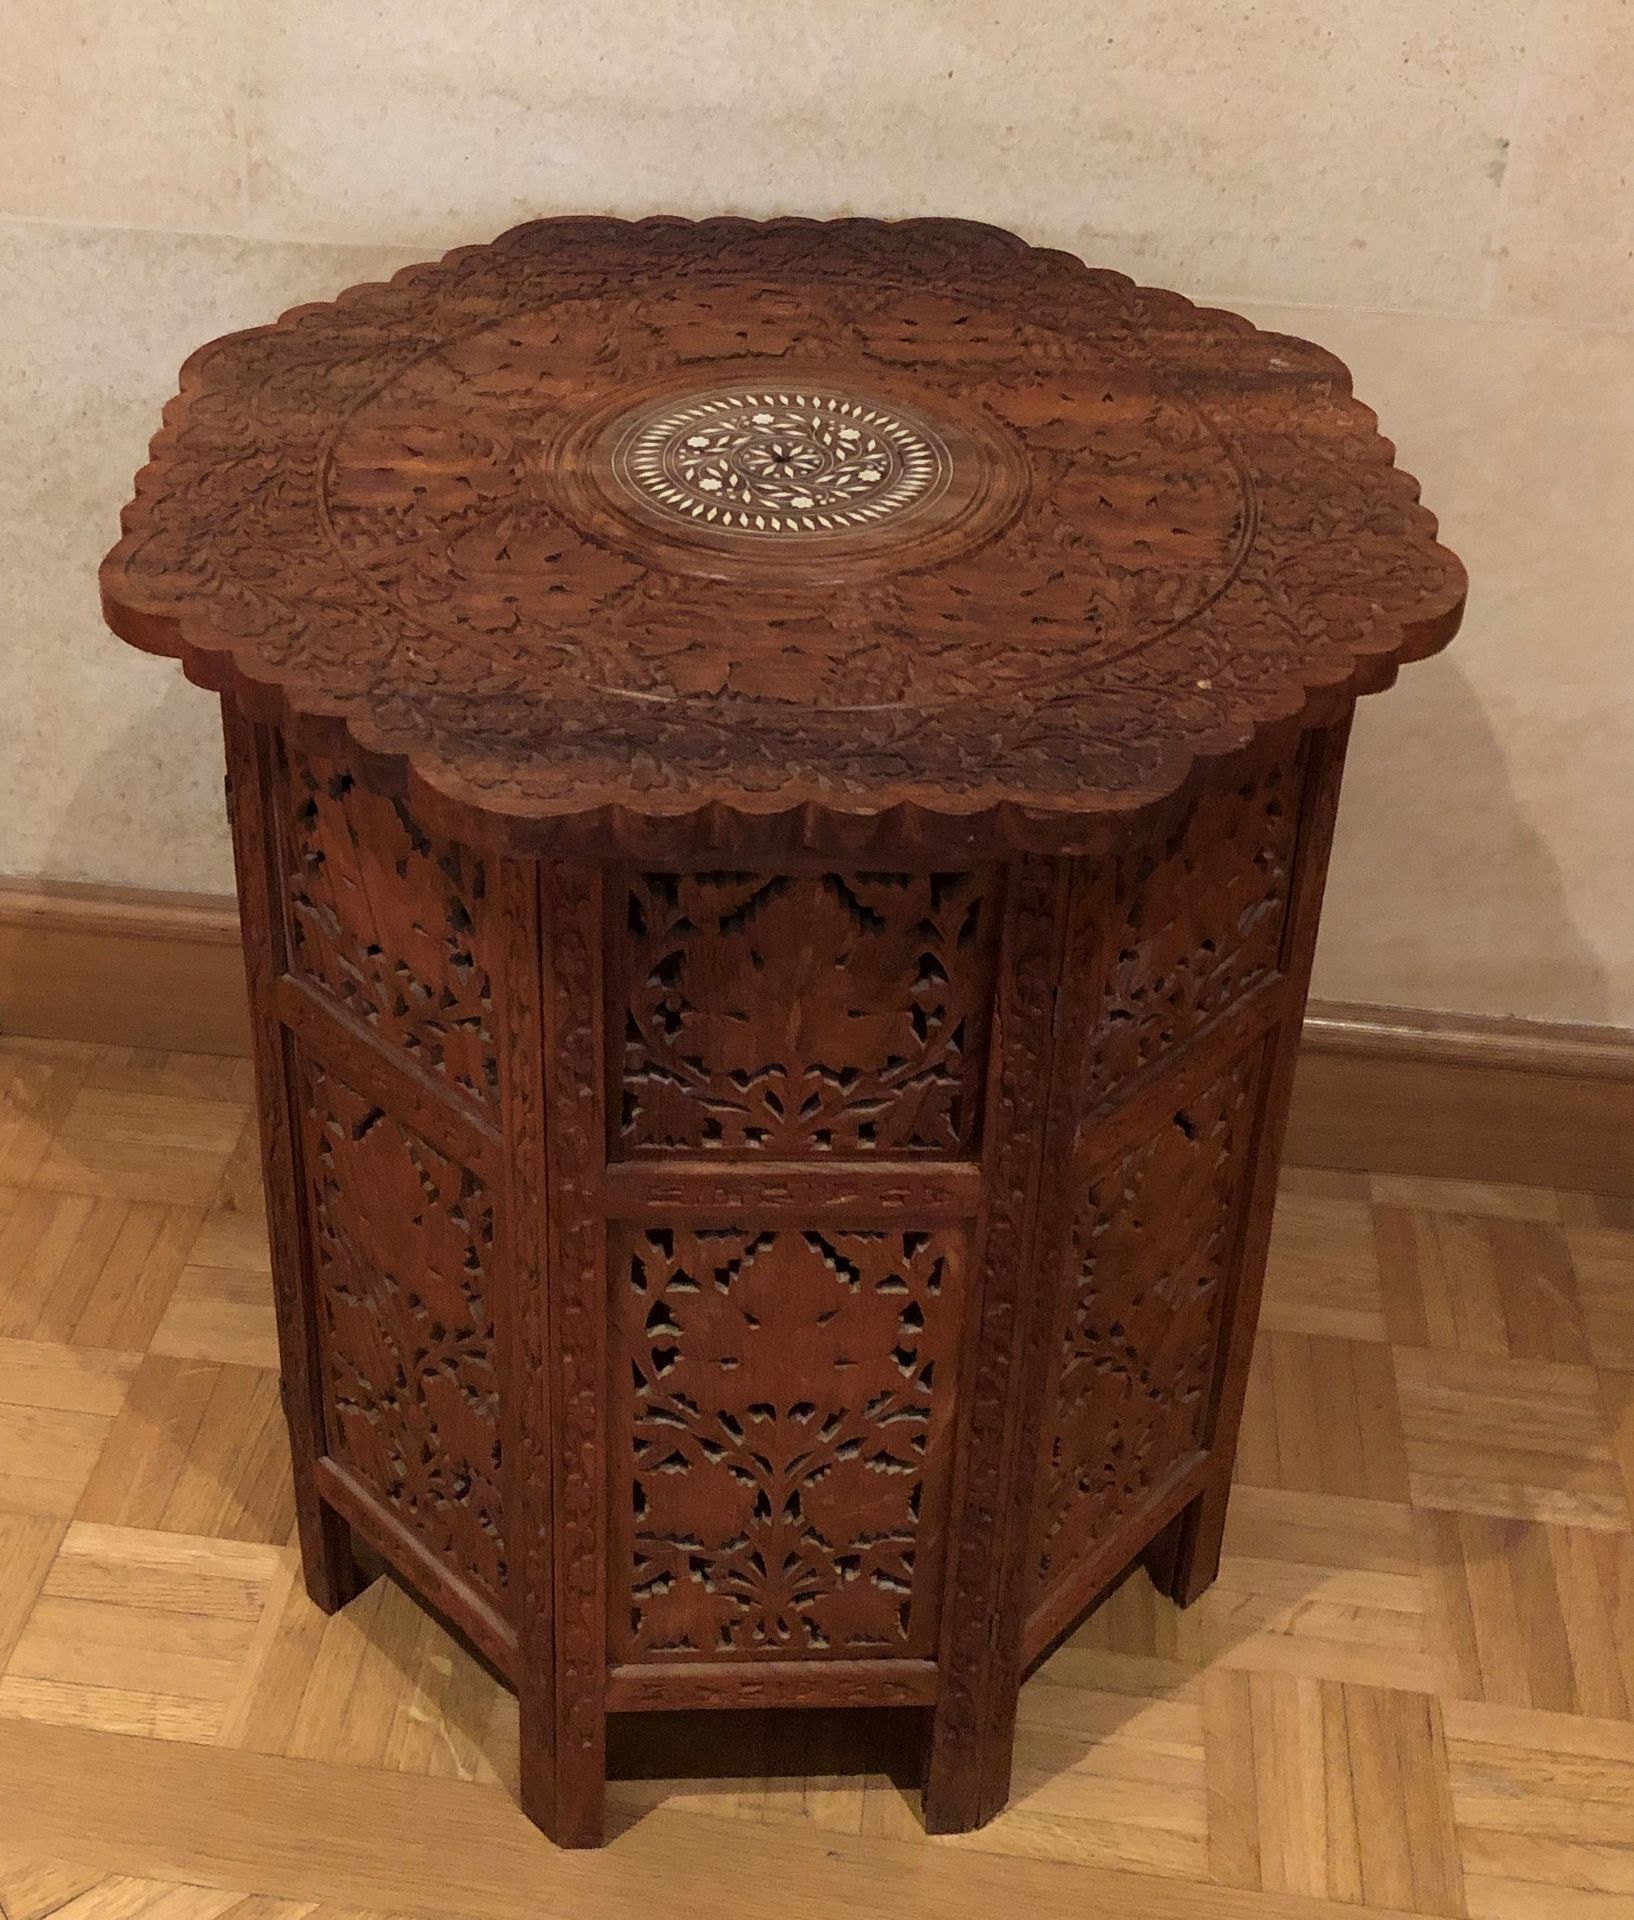 Null 套装包括 :

- 镶嵌珍珠母的木质雕花基座桌。

叙利亚作品，20世纪

64 x 58 cm

- 两个床头柜，一个涂成蓝色

58 x 61,5&hellip;